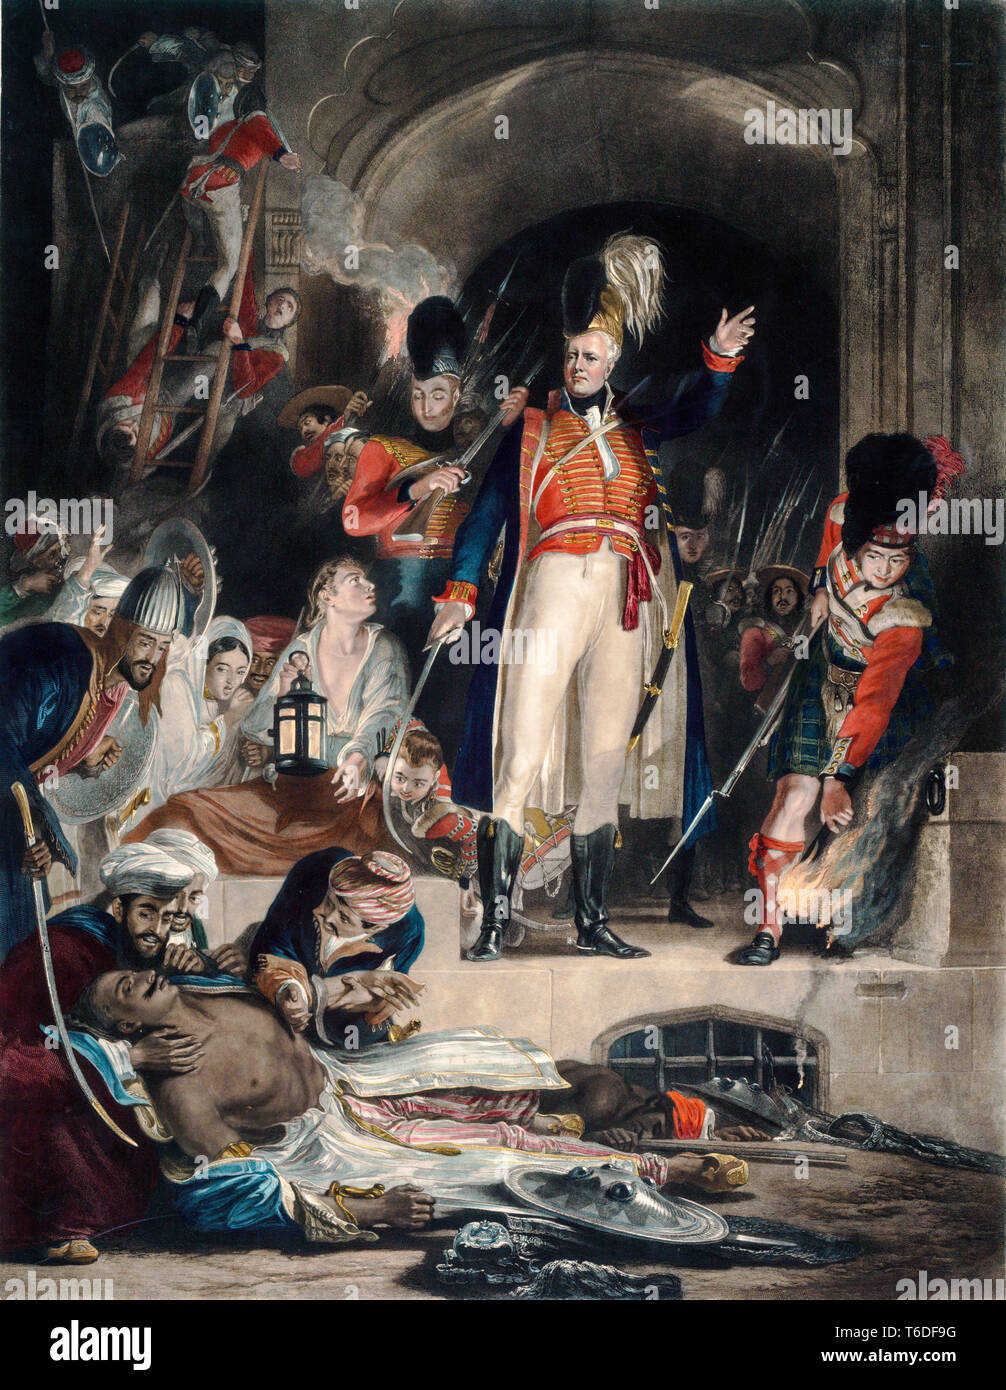 Le général Sir David Baird découvrir le corps de Tipu Sultan après storming Seringapatam le 4 mai 1799, peinture de David Wilkie , gravée par John Burnett, 1843 Banque D'Images